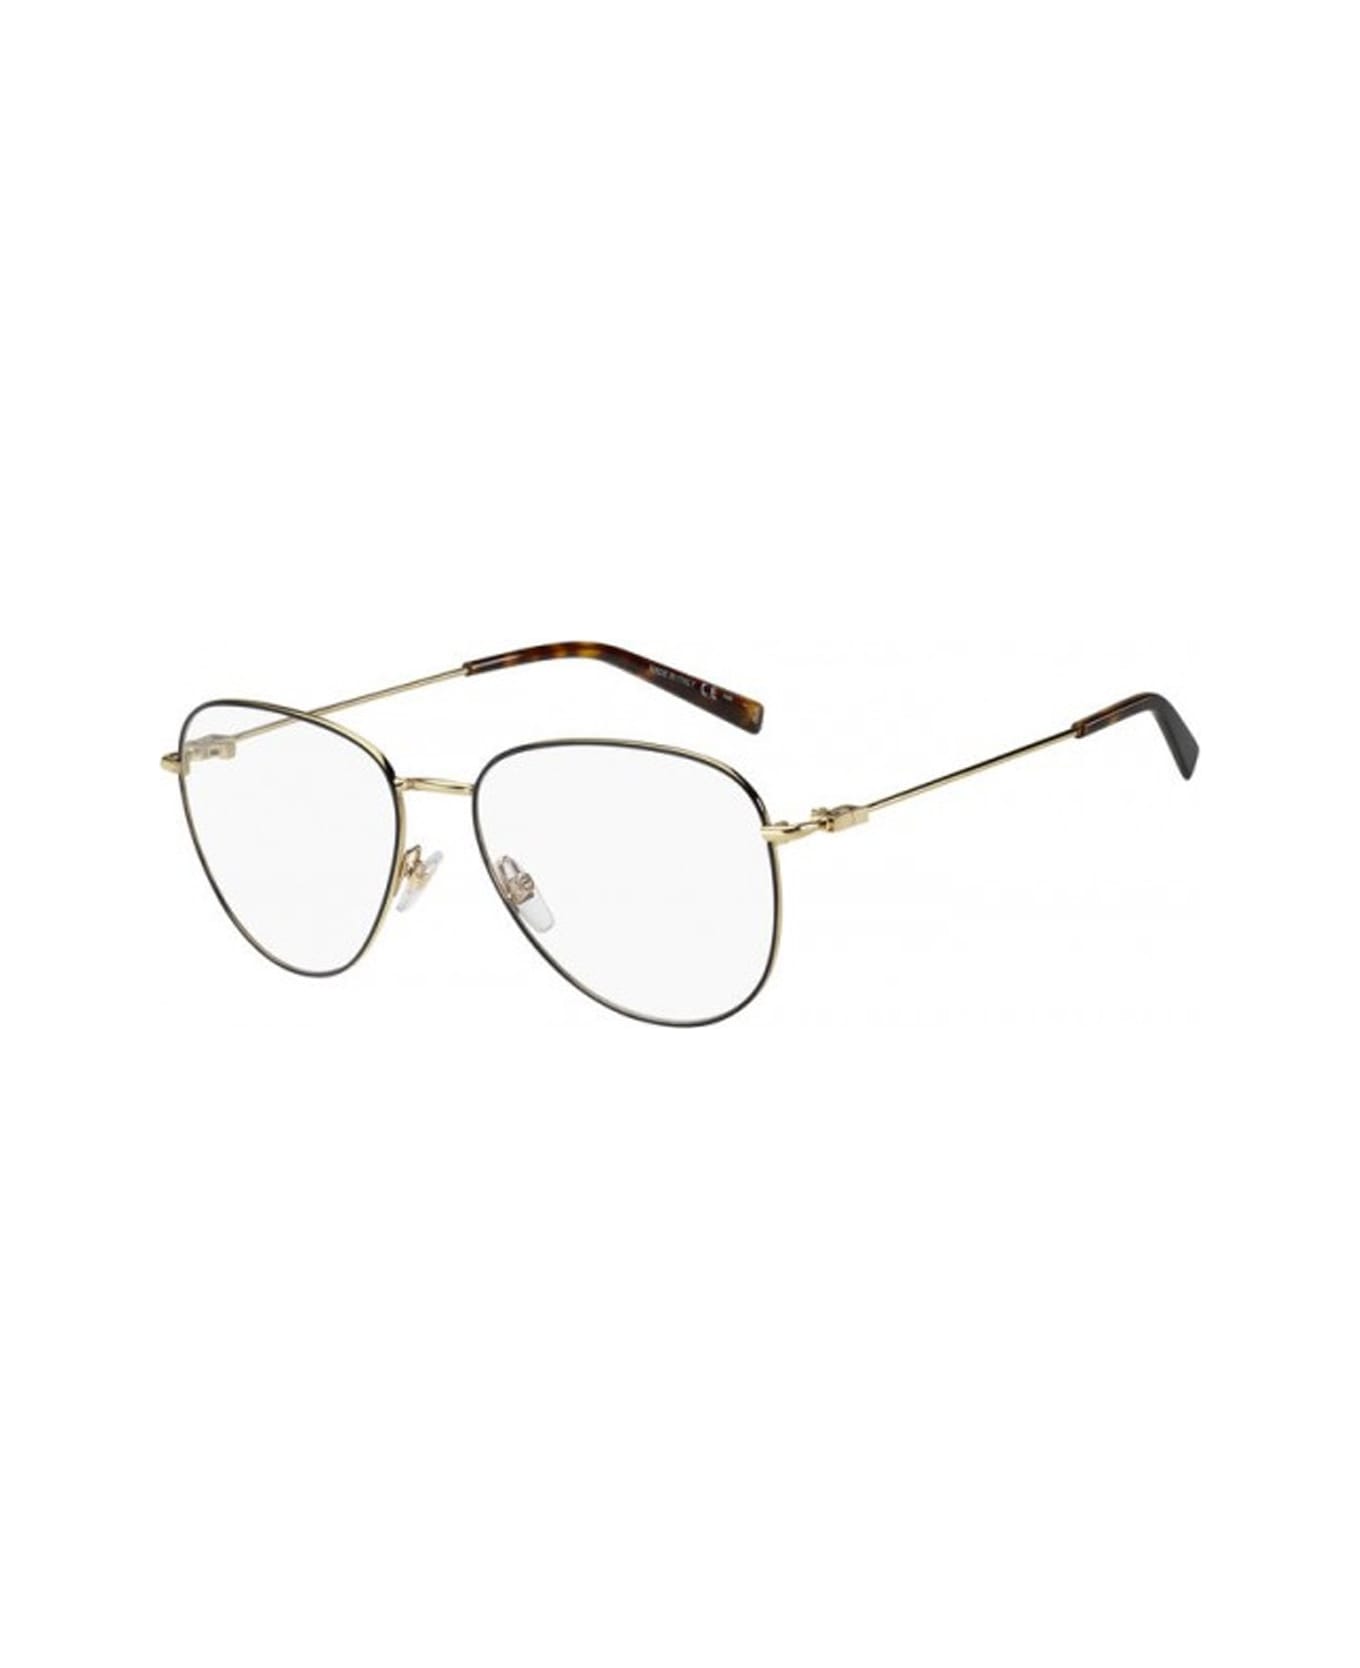 Givenchy Eyewear Gv 0150 Glasses - Nero